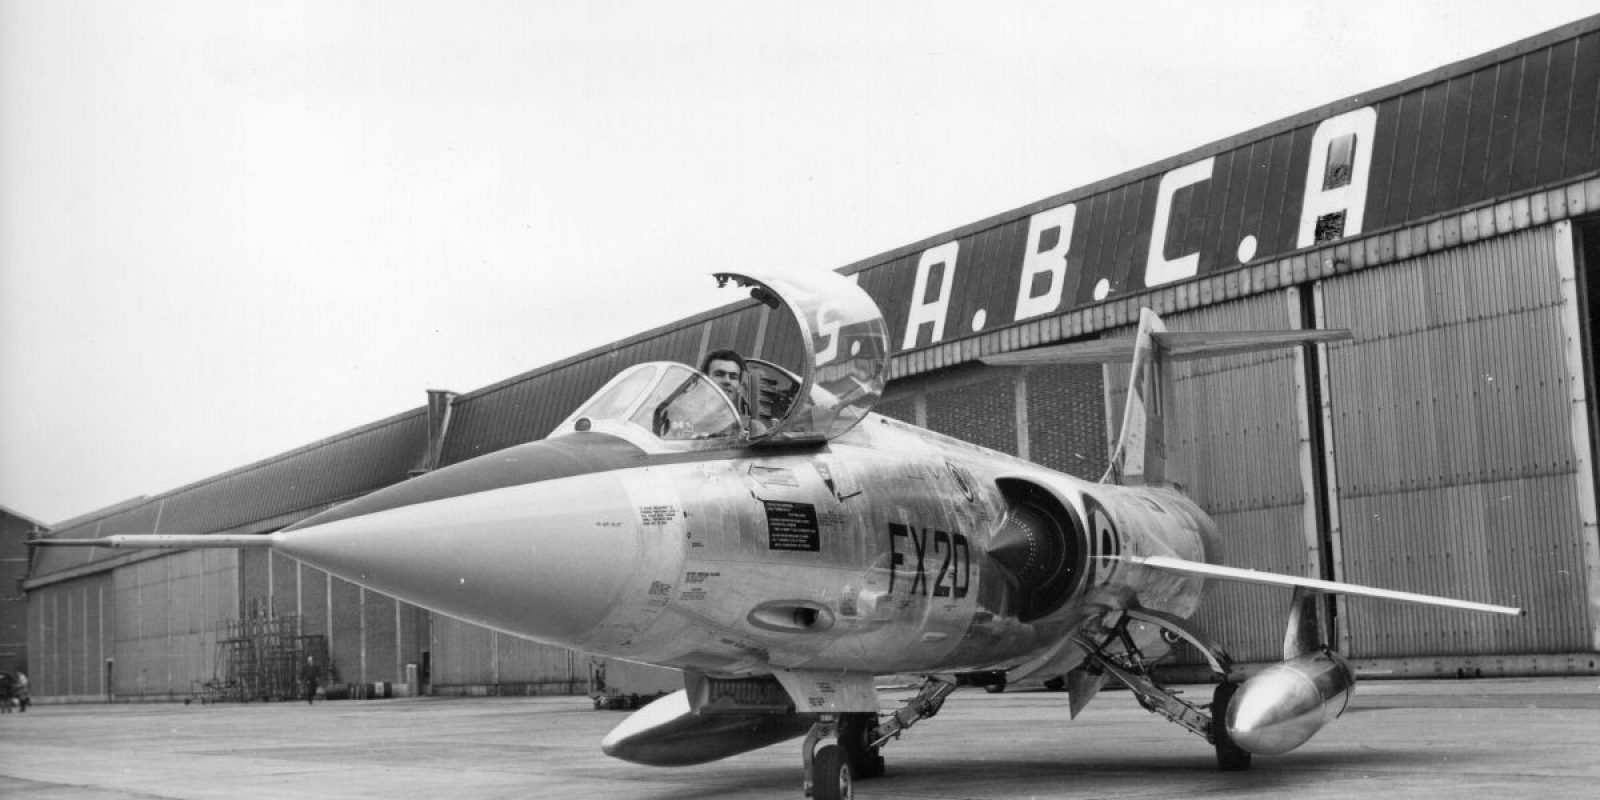 Le 30 octobre 1963, le FX-20 flambant neuf fait l’objet d’une séance photo avec le légendaire pilote Bernard Neefs. L’homme au « casque d ‘argent » est un pilote d’exception, très connu et populaire. Il a été « prêté » par son employeur Fairey à la SABCA pour la durée du programme F-104G. Il décèdera à 35 ans lors d’un accident d’avion à Gênes en Italie le 7 novembre 1965.